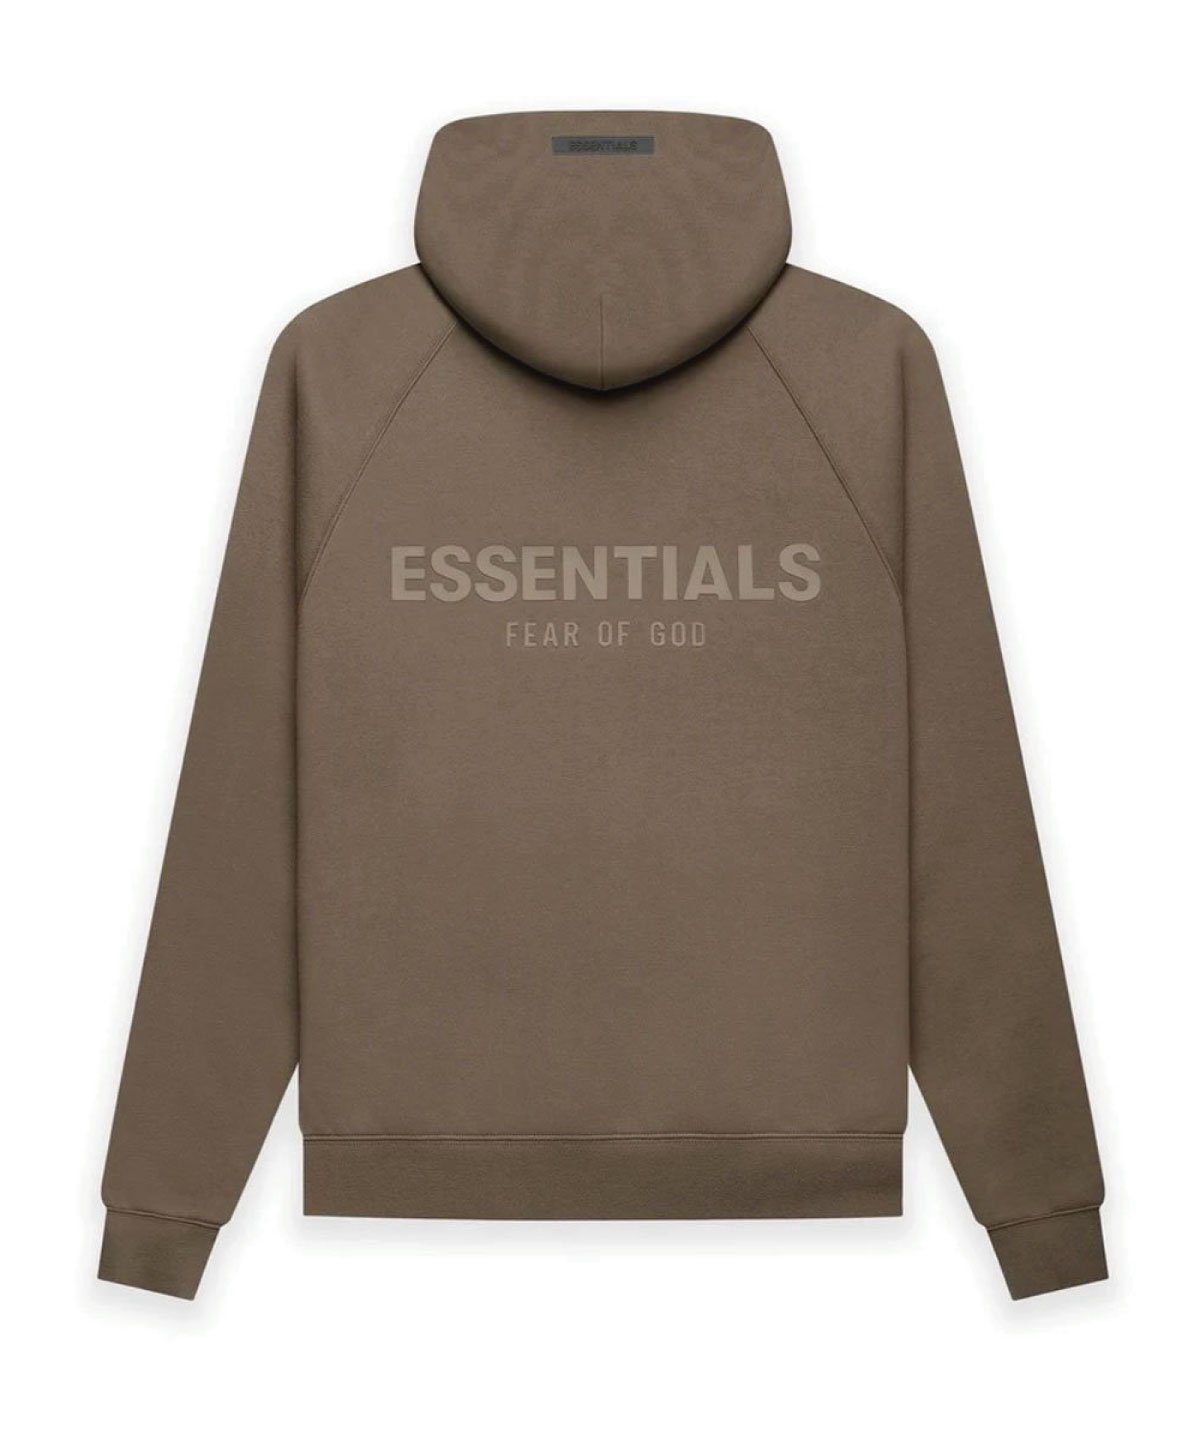 L fear of god fog Essentials hoodie